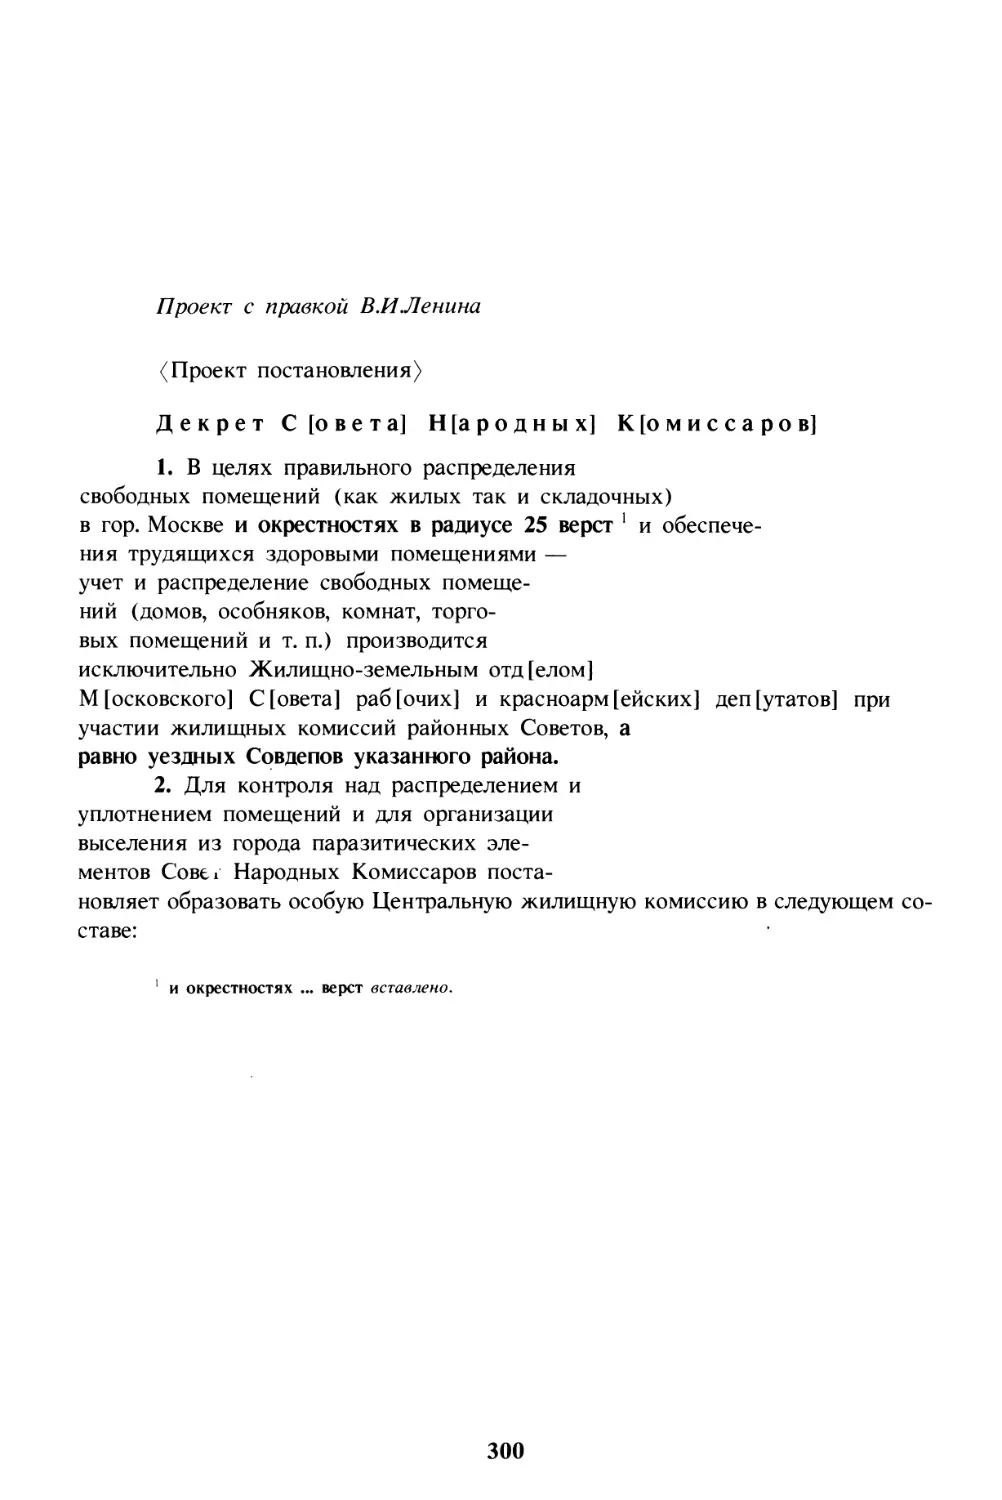 Декрет об учреждении Центральной жилищной комиссии для Москвы и ее окрестностей